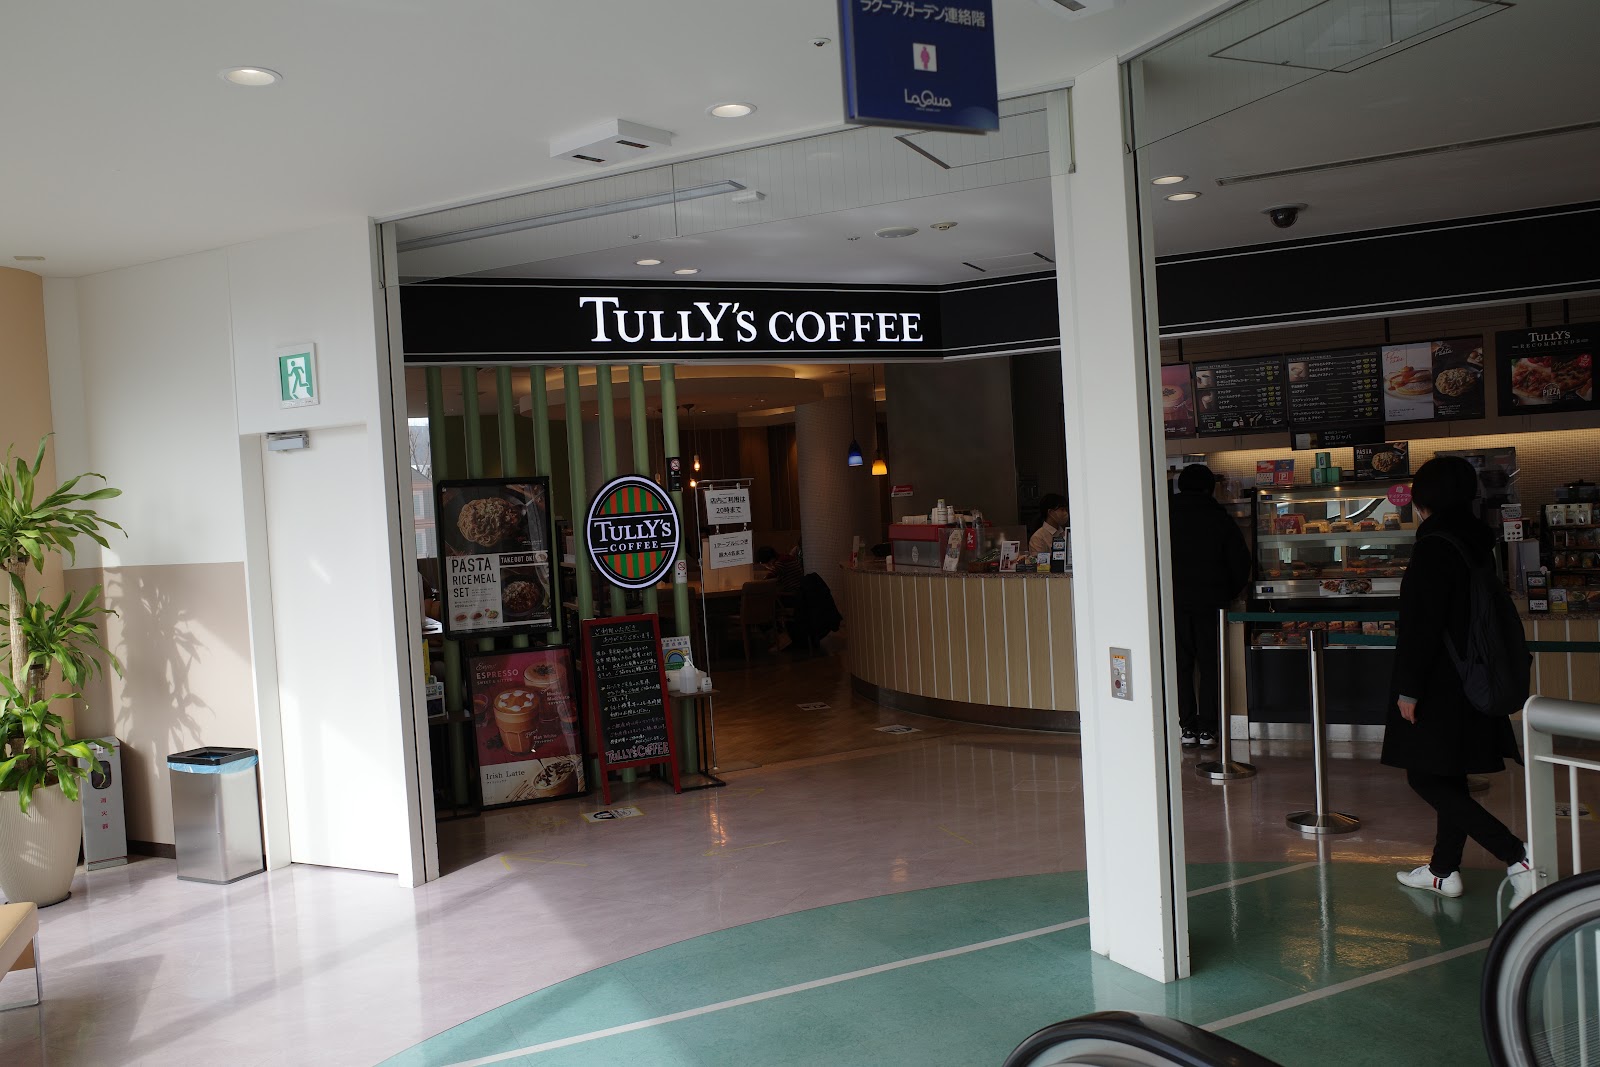 タリーズコーヒー 東京ドームシティ ラクーア店の風景